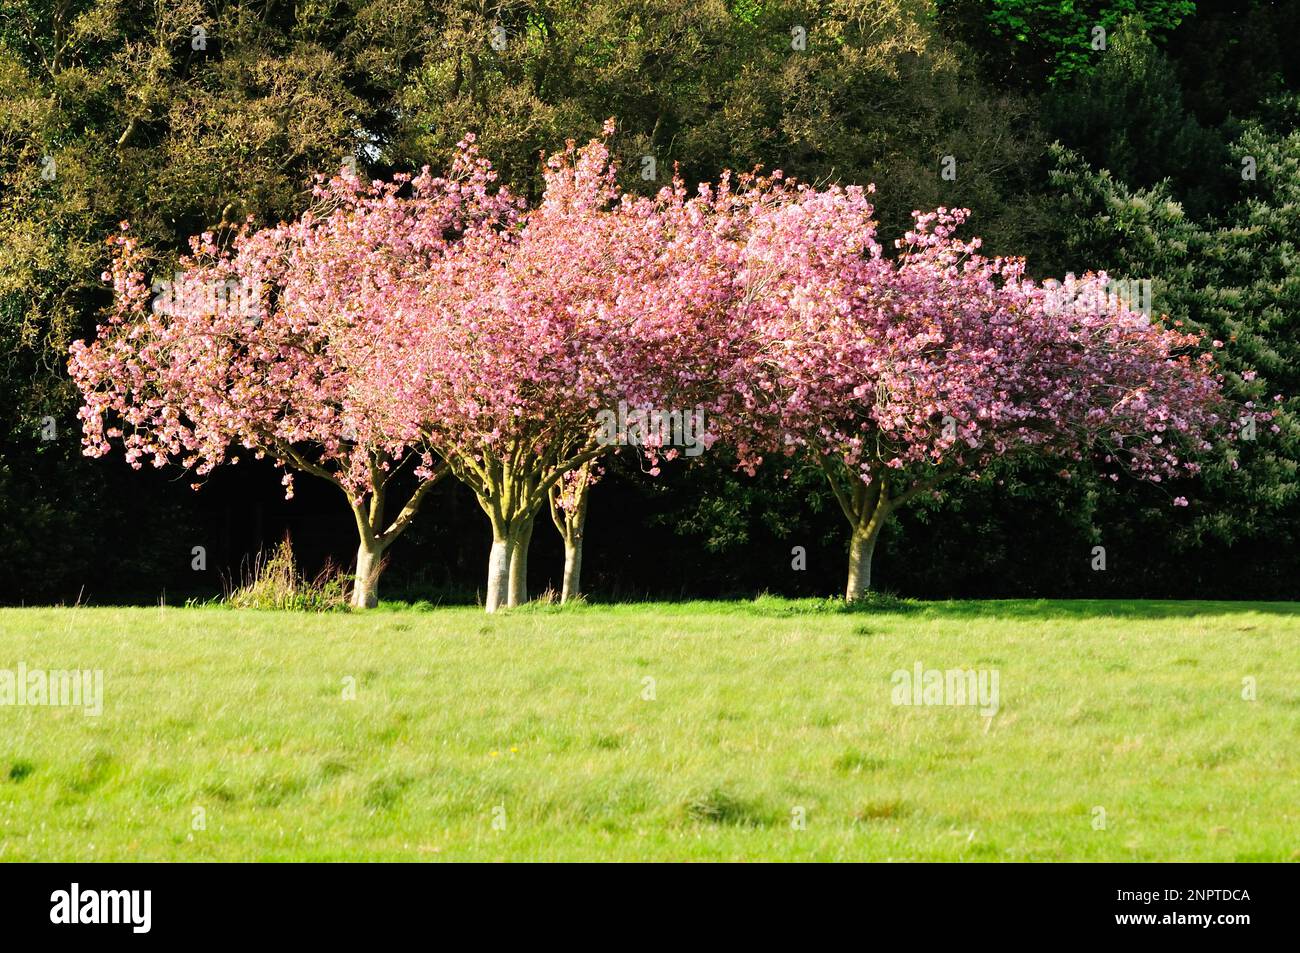 Cherry trees (Prunus avium) in blossom Stock Photo